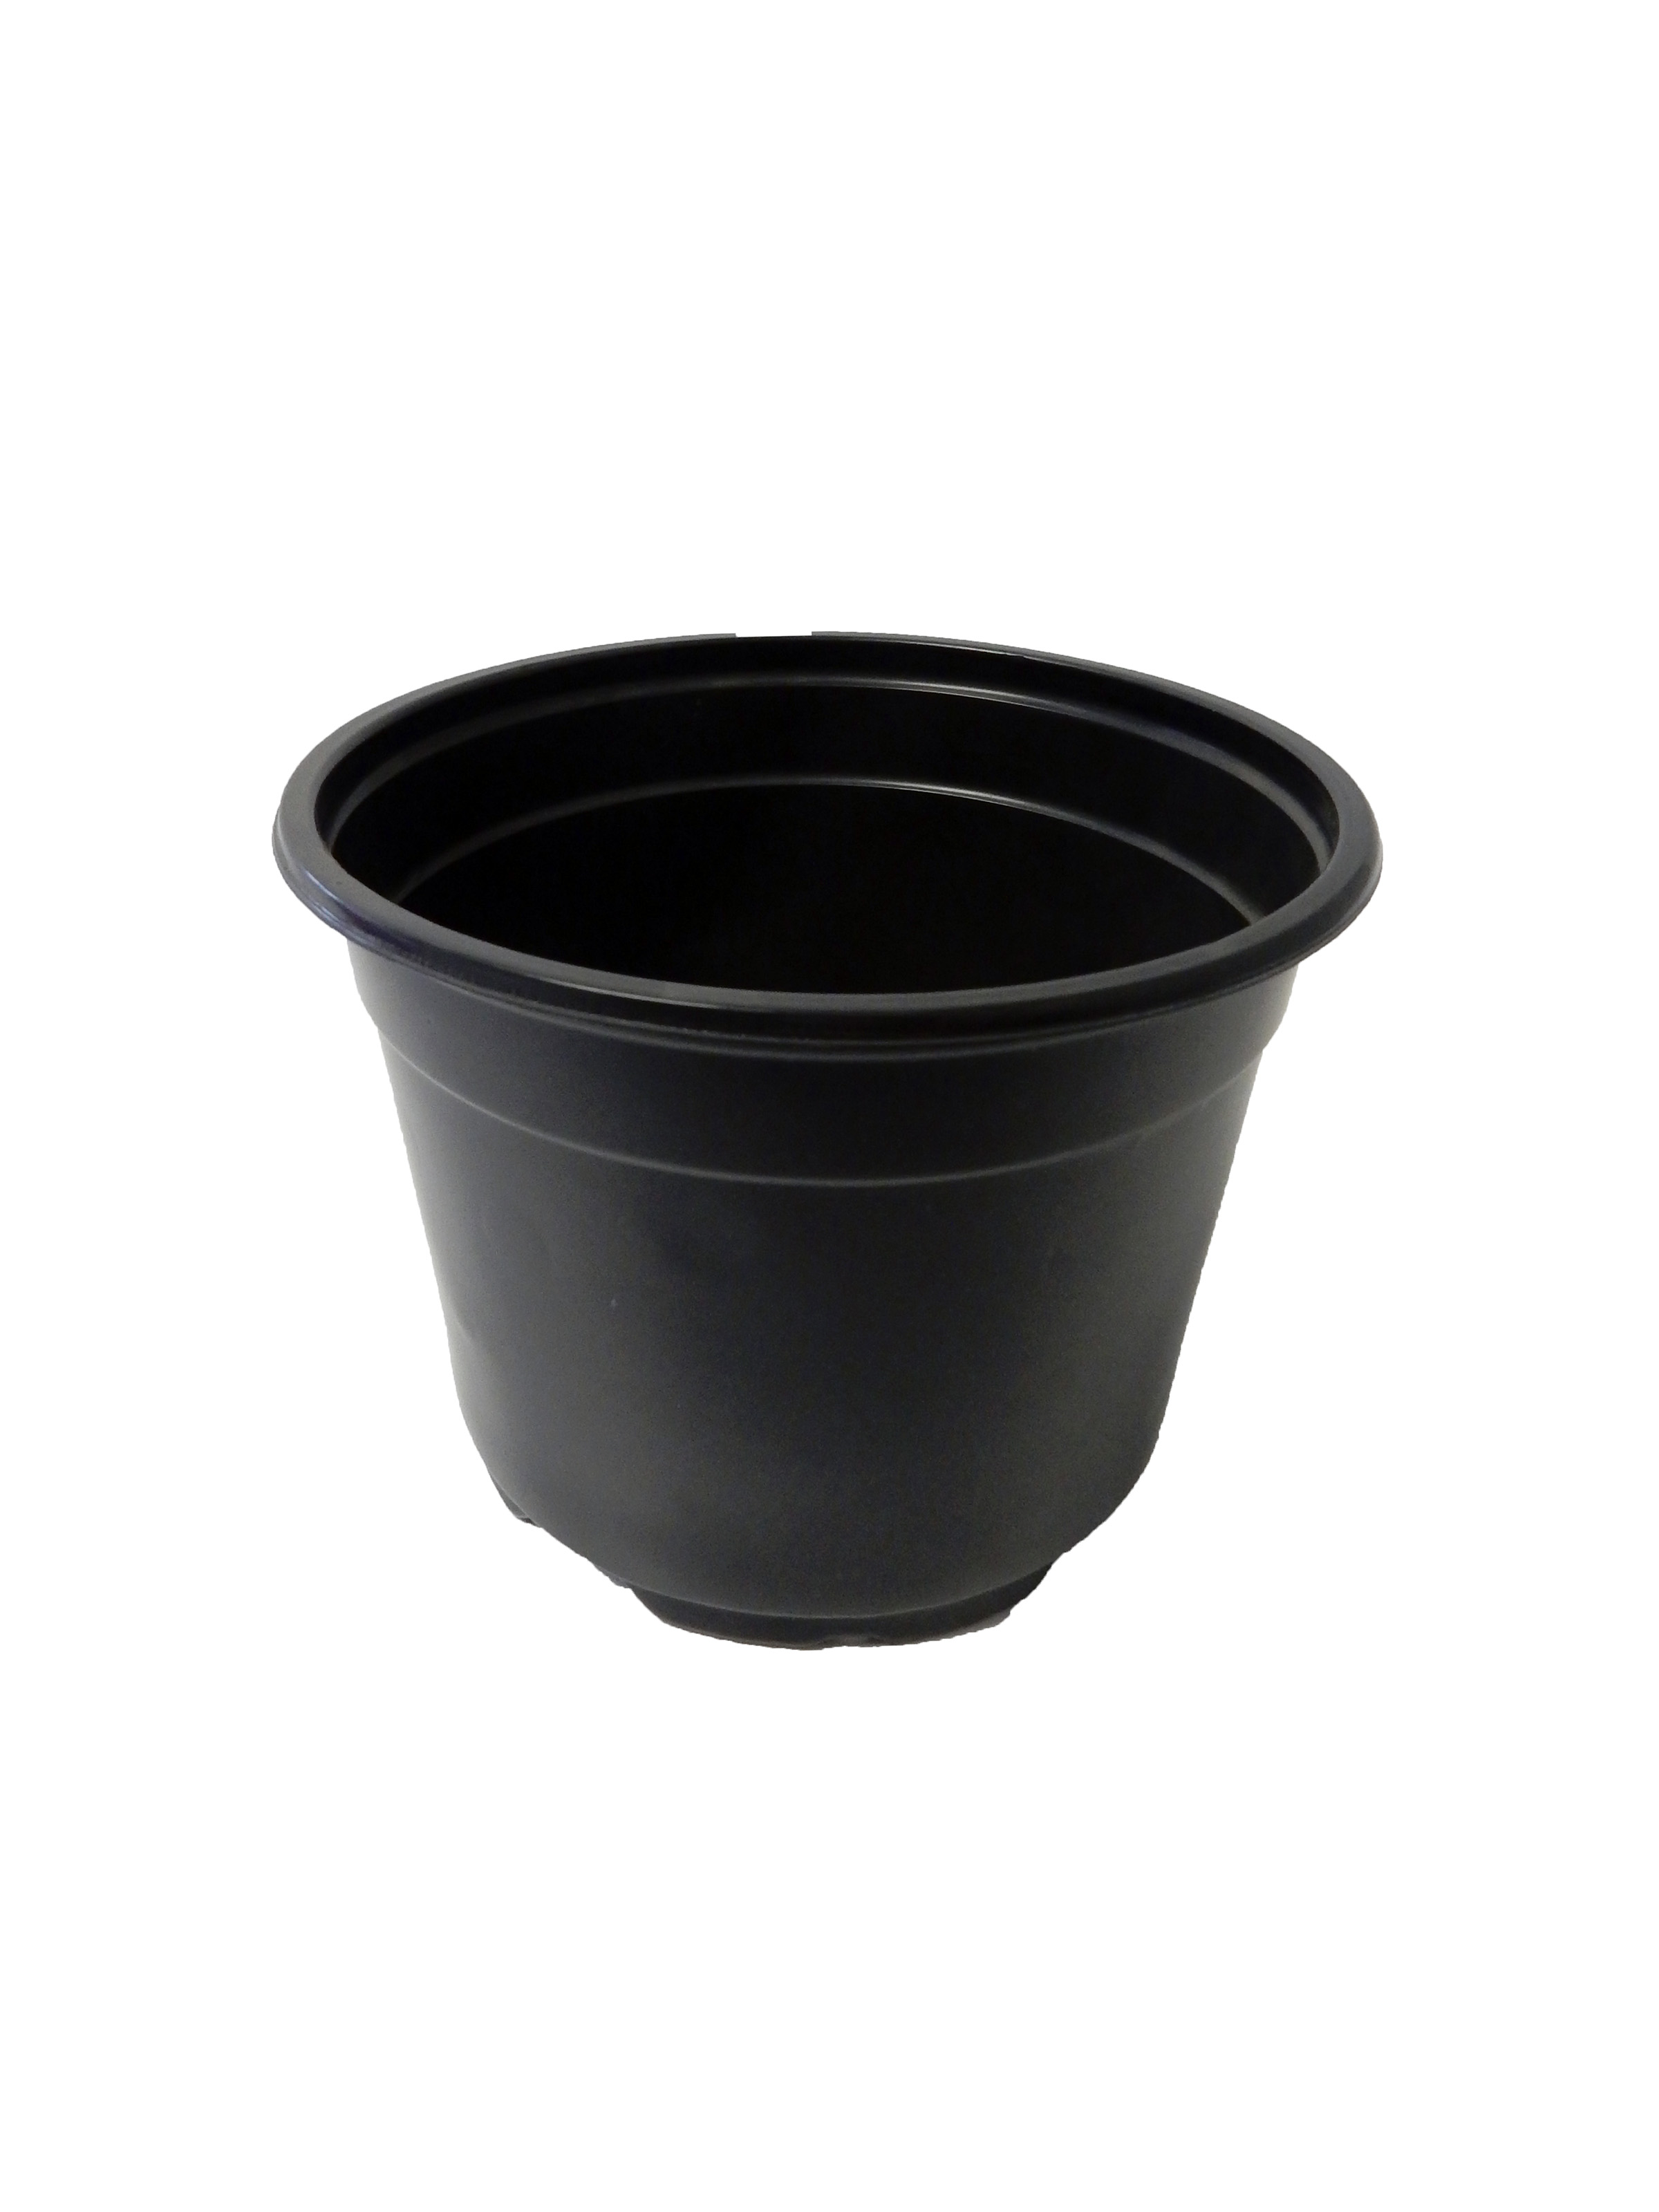 17 cm Euro Pot Coex Short Black/Black - 300 per case